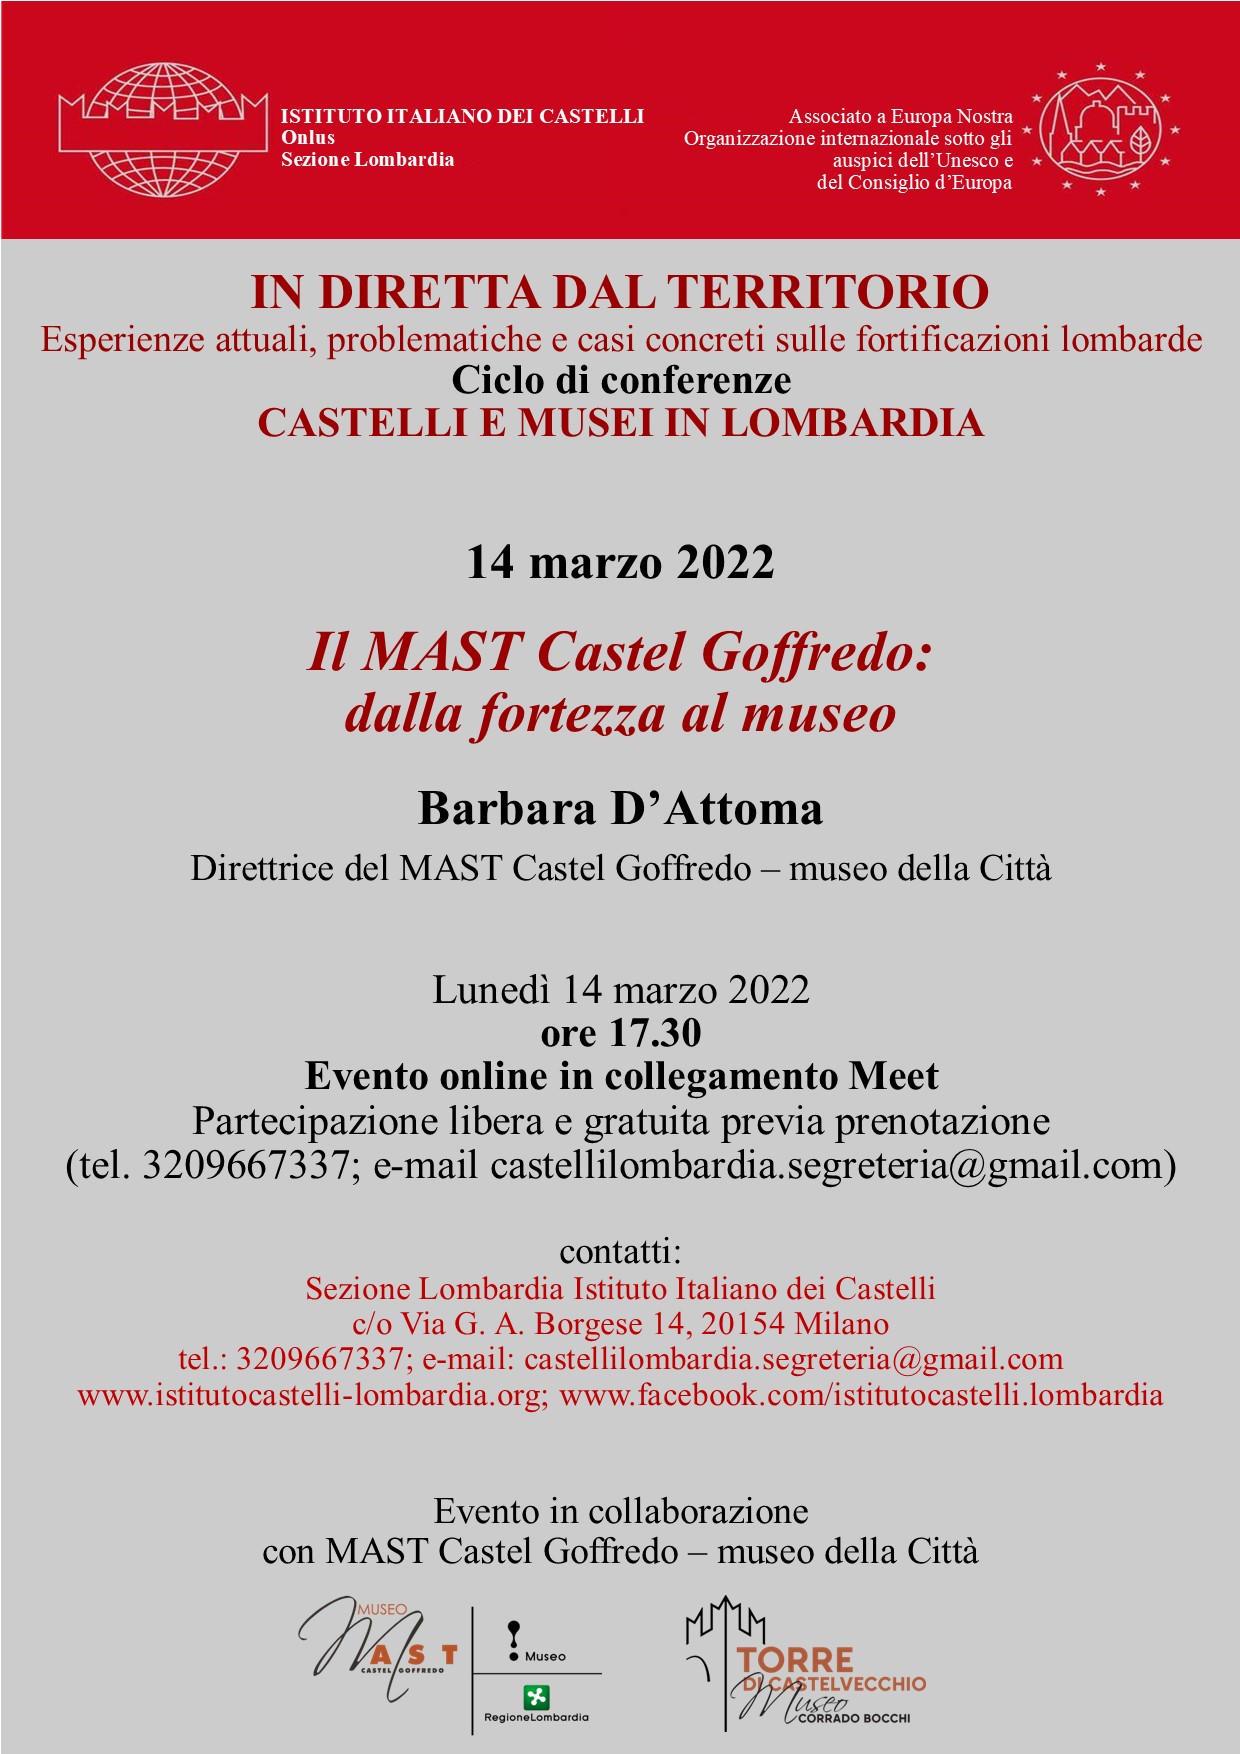 Sezione Lombardia: Ciclo di conferenze: castelli e musei in Lombardia